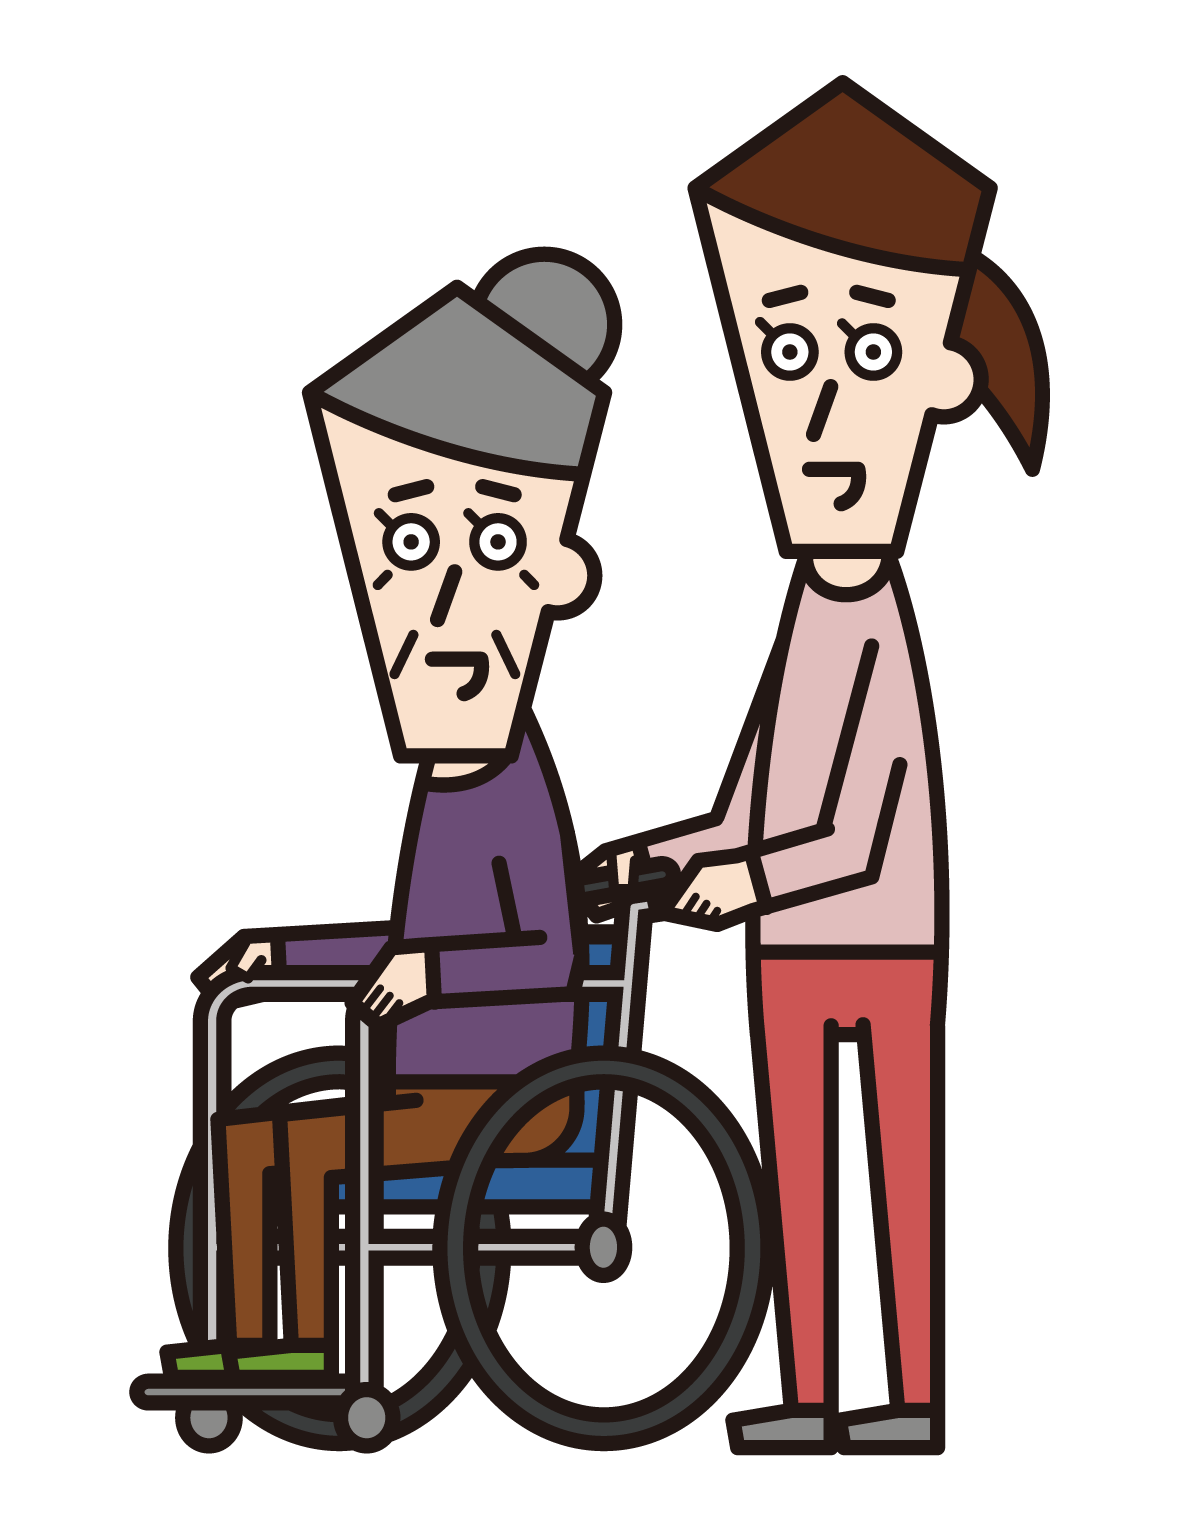 坐在輪椅上的人（祖父）和來訪的護理人員（男性）的插圖